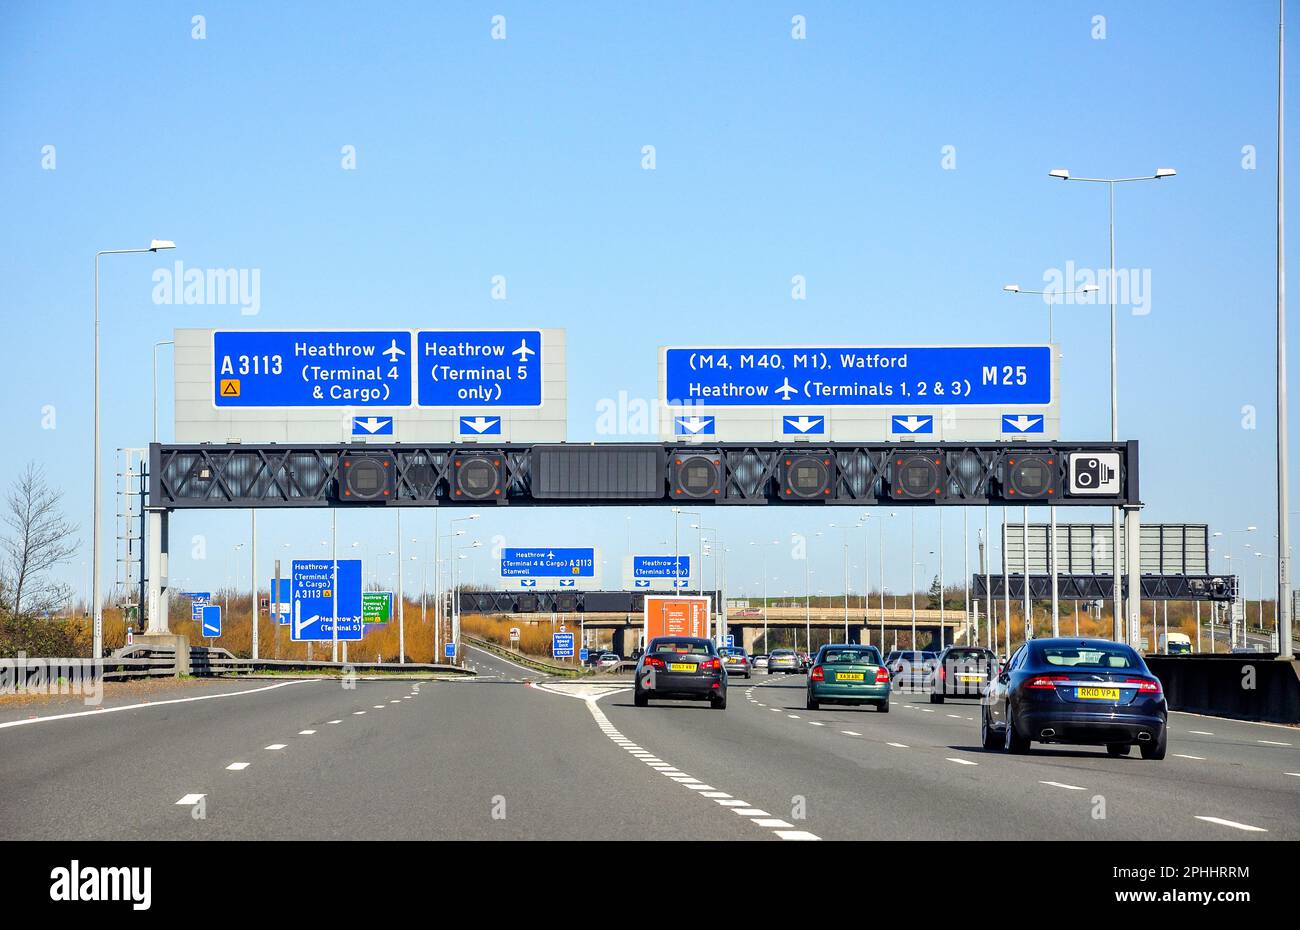 La sortie 14 sur l'autoroute M25, Surrey, Angleterre, Royaume-Uni Banque D'Images